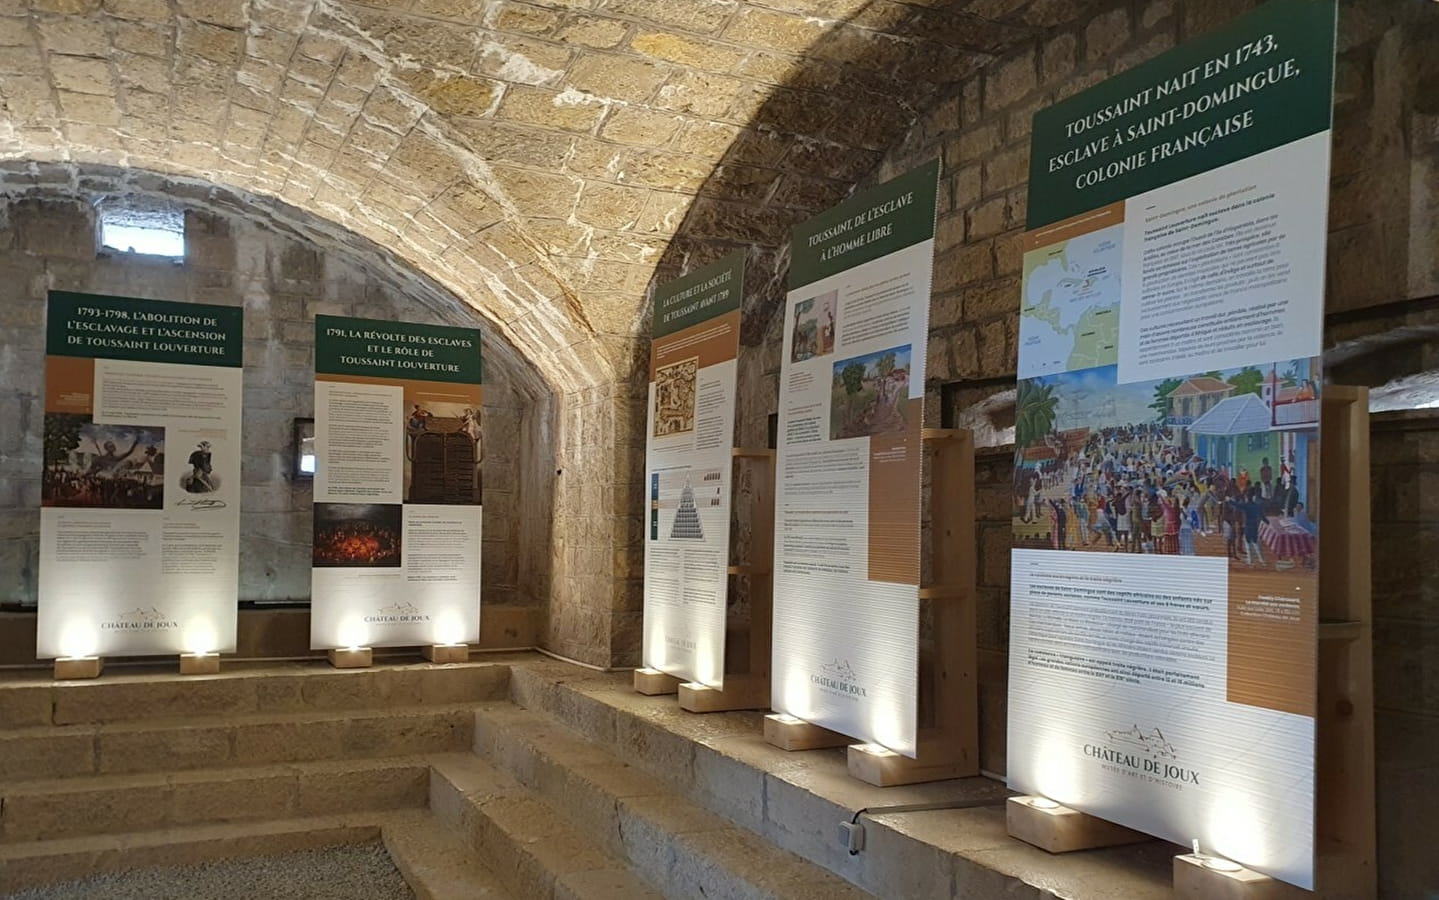 Exhibition - Toussaint Louverture imprisoned at the Château de Joux